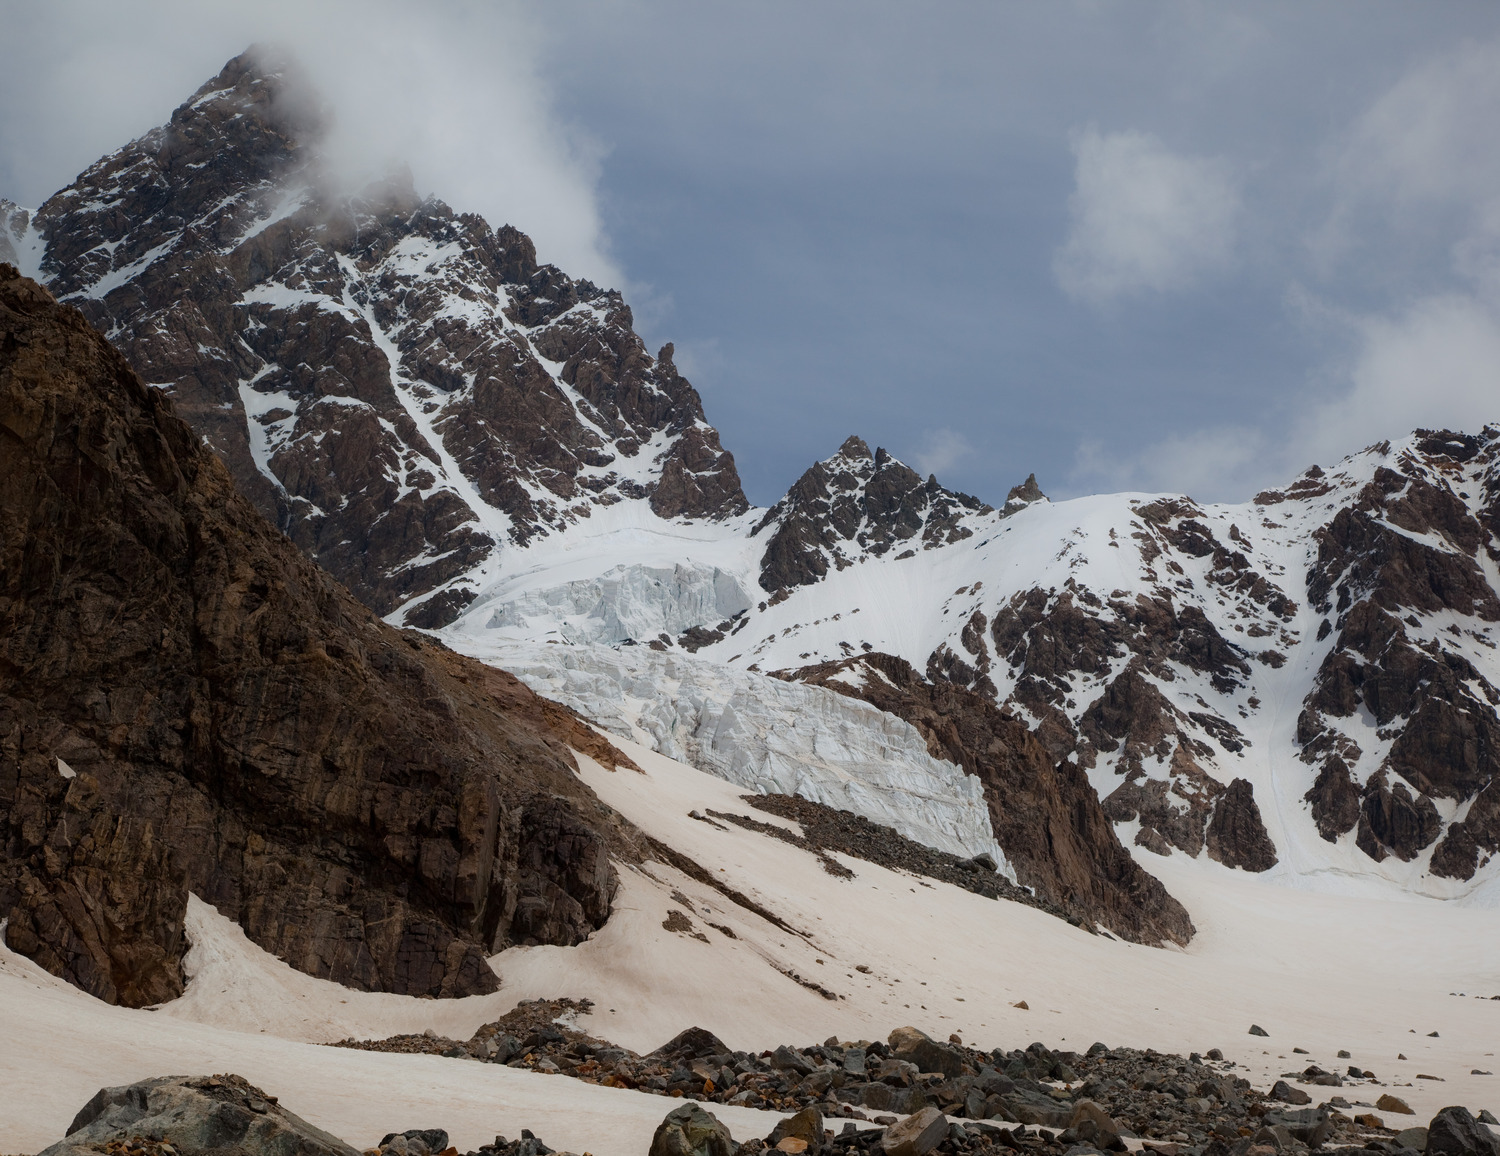 Ледник Селла и перевал Селла. С верхнего ледопада мы дюльфернули, а нижний обошли.